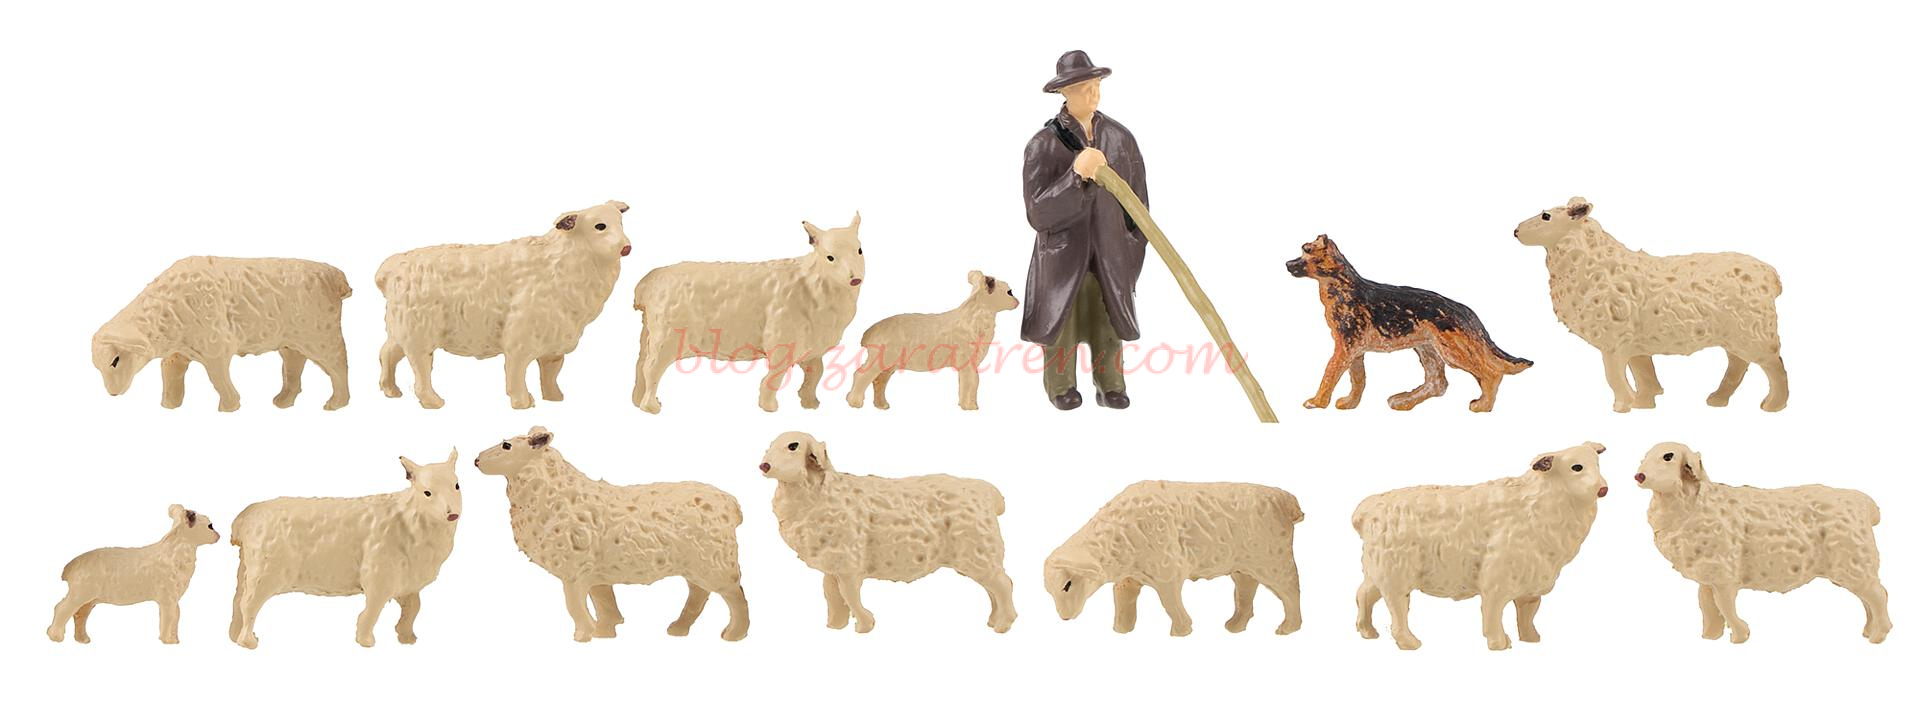 Faller – Pastor con perro y ovejas, Catorce figuras, Escala H0, Ref: 151901